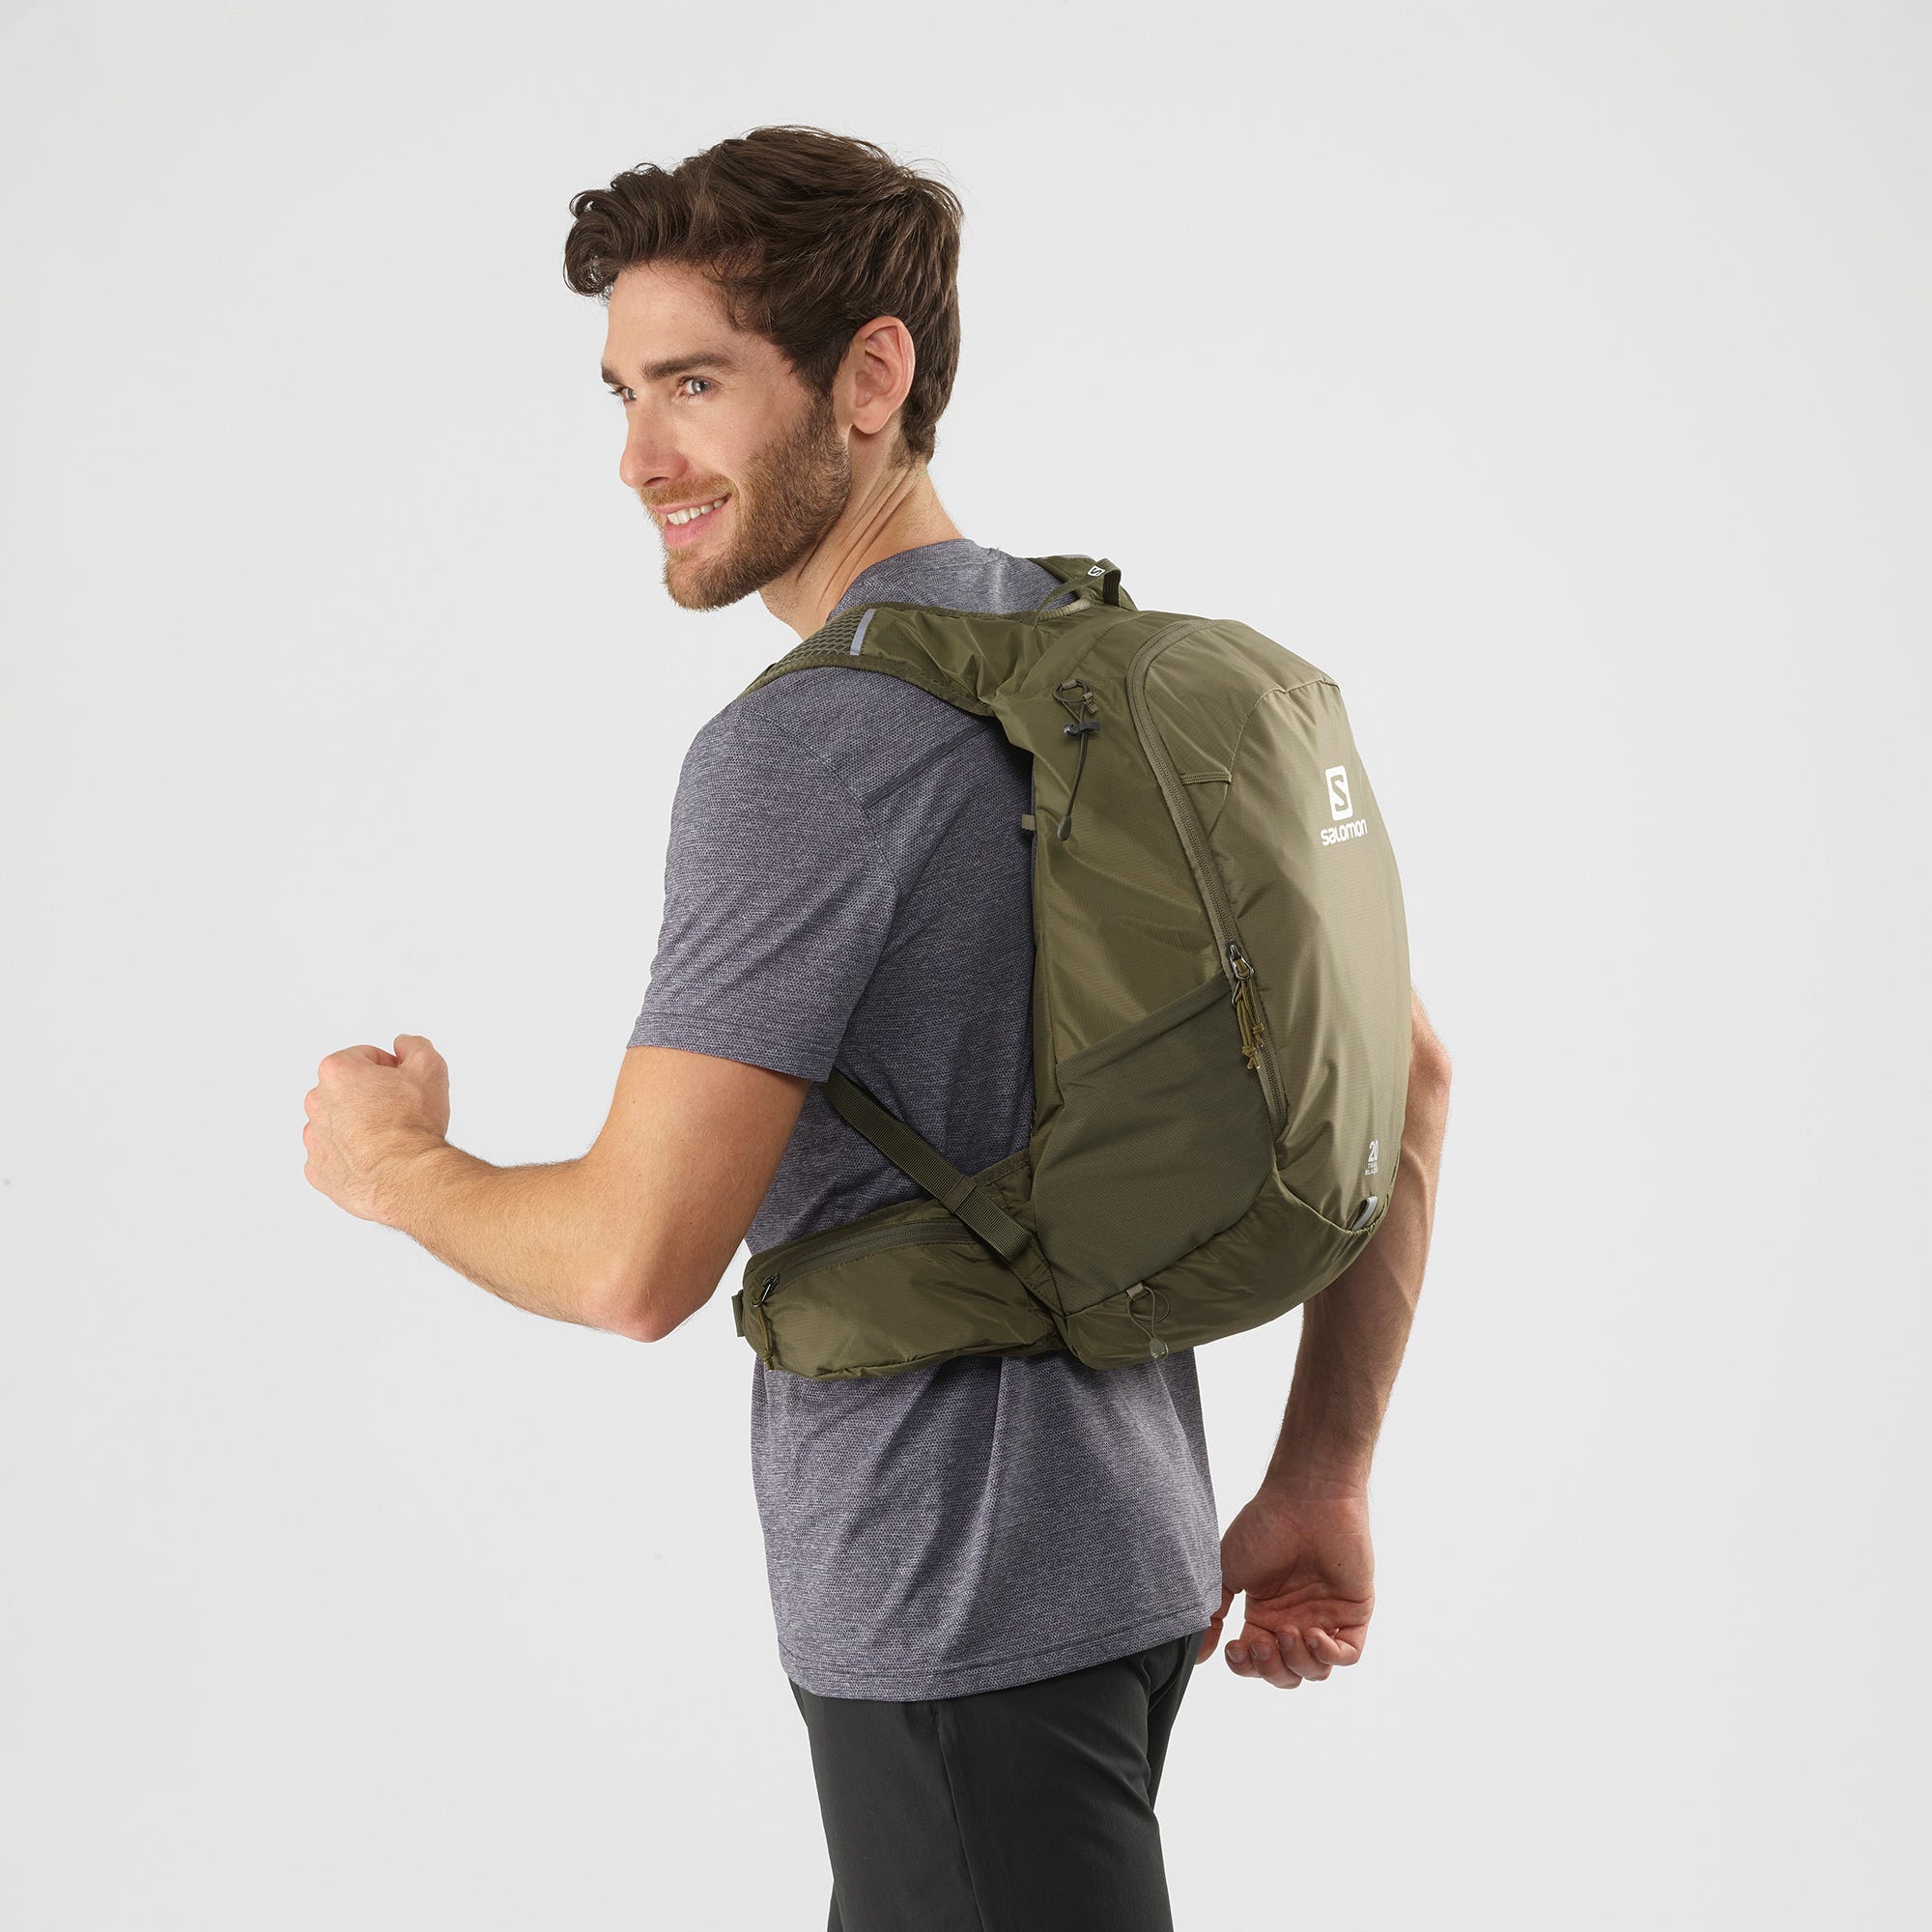 Salomon 20 Backpack -